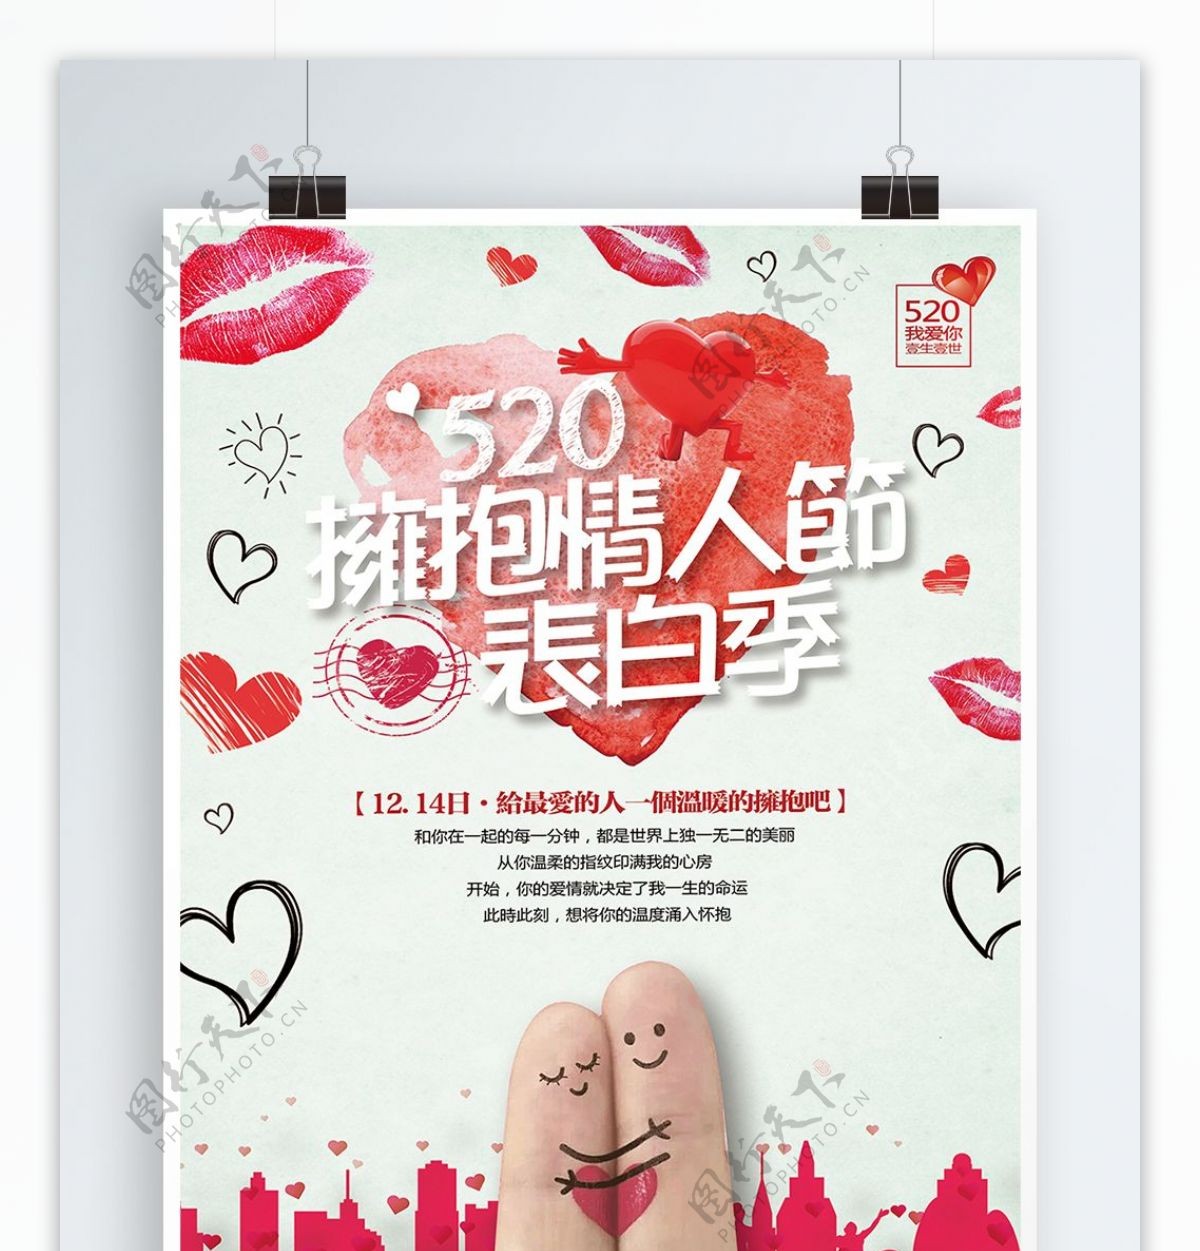 清新简约520拥抱情人节宣传海报展板